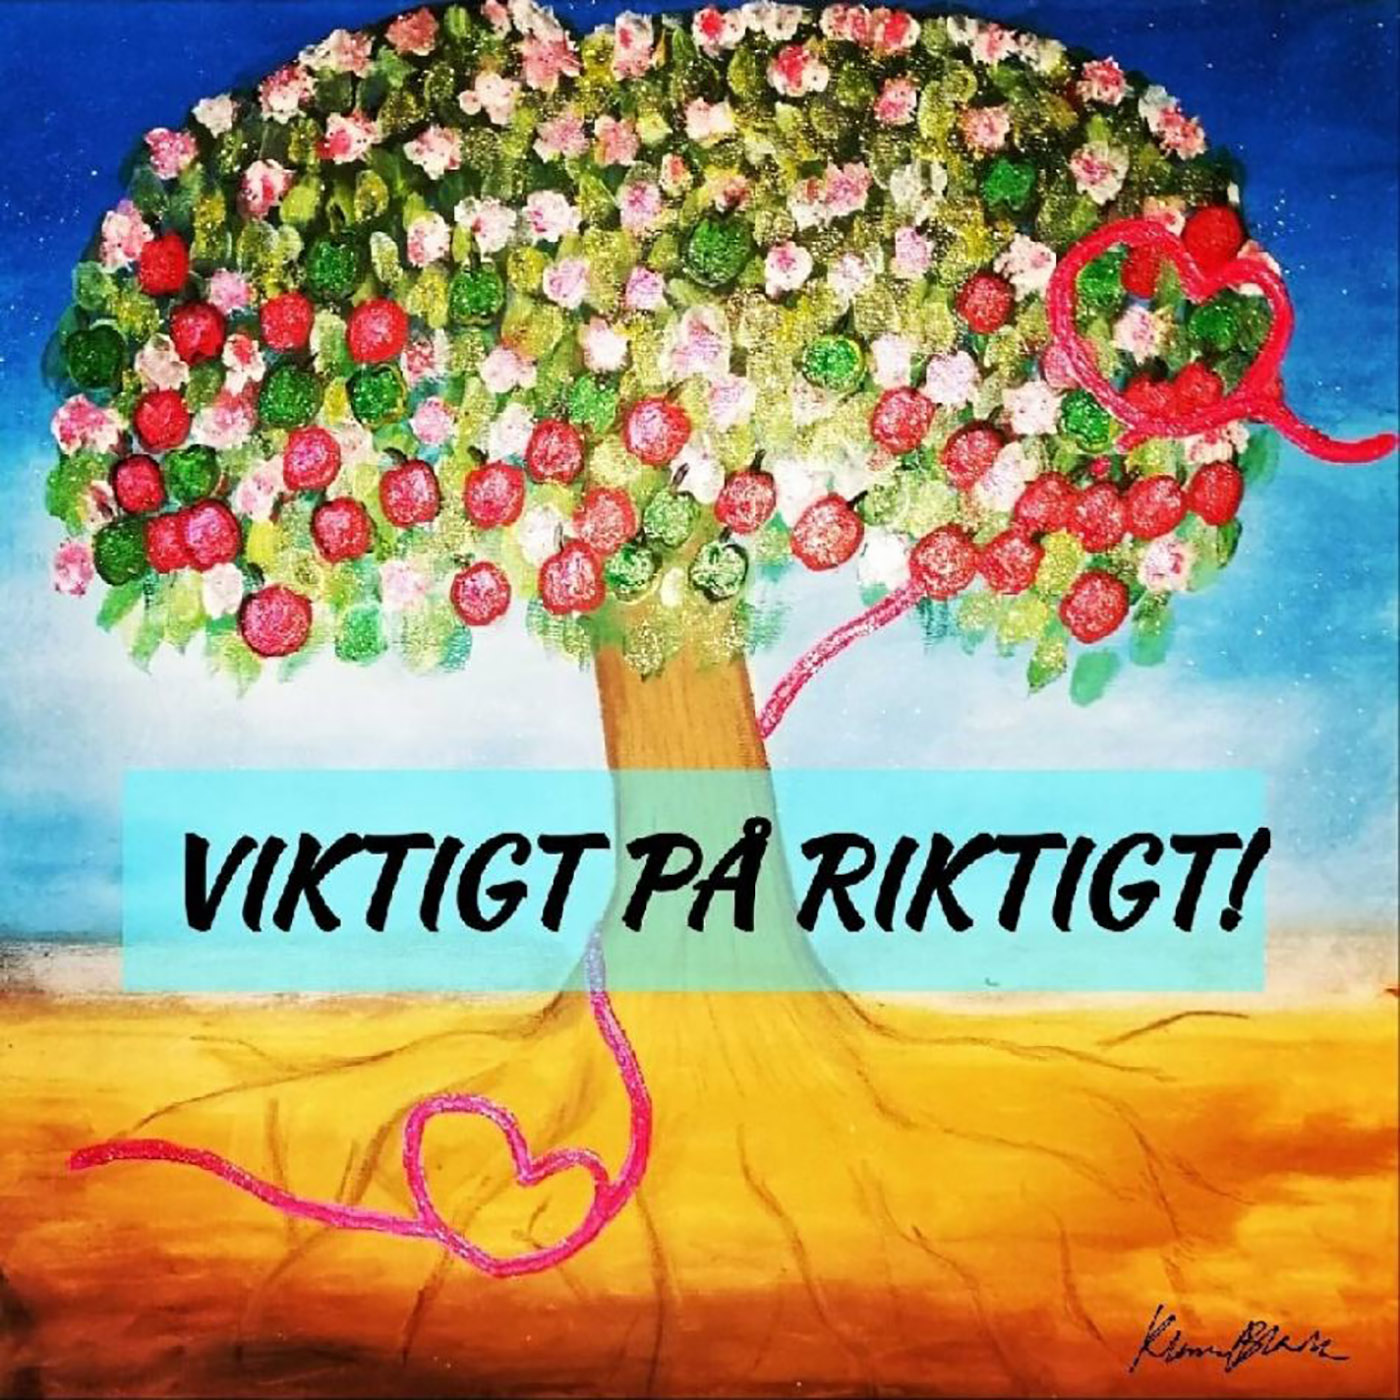 Show artwork for Viktigt på Riktigt, by Carin Coach